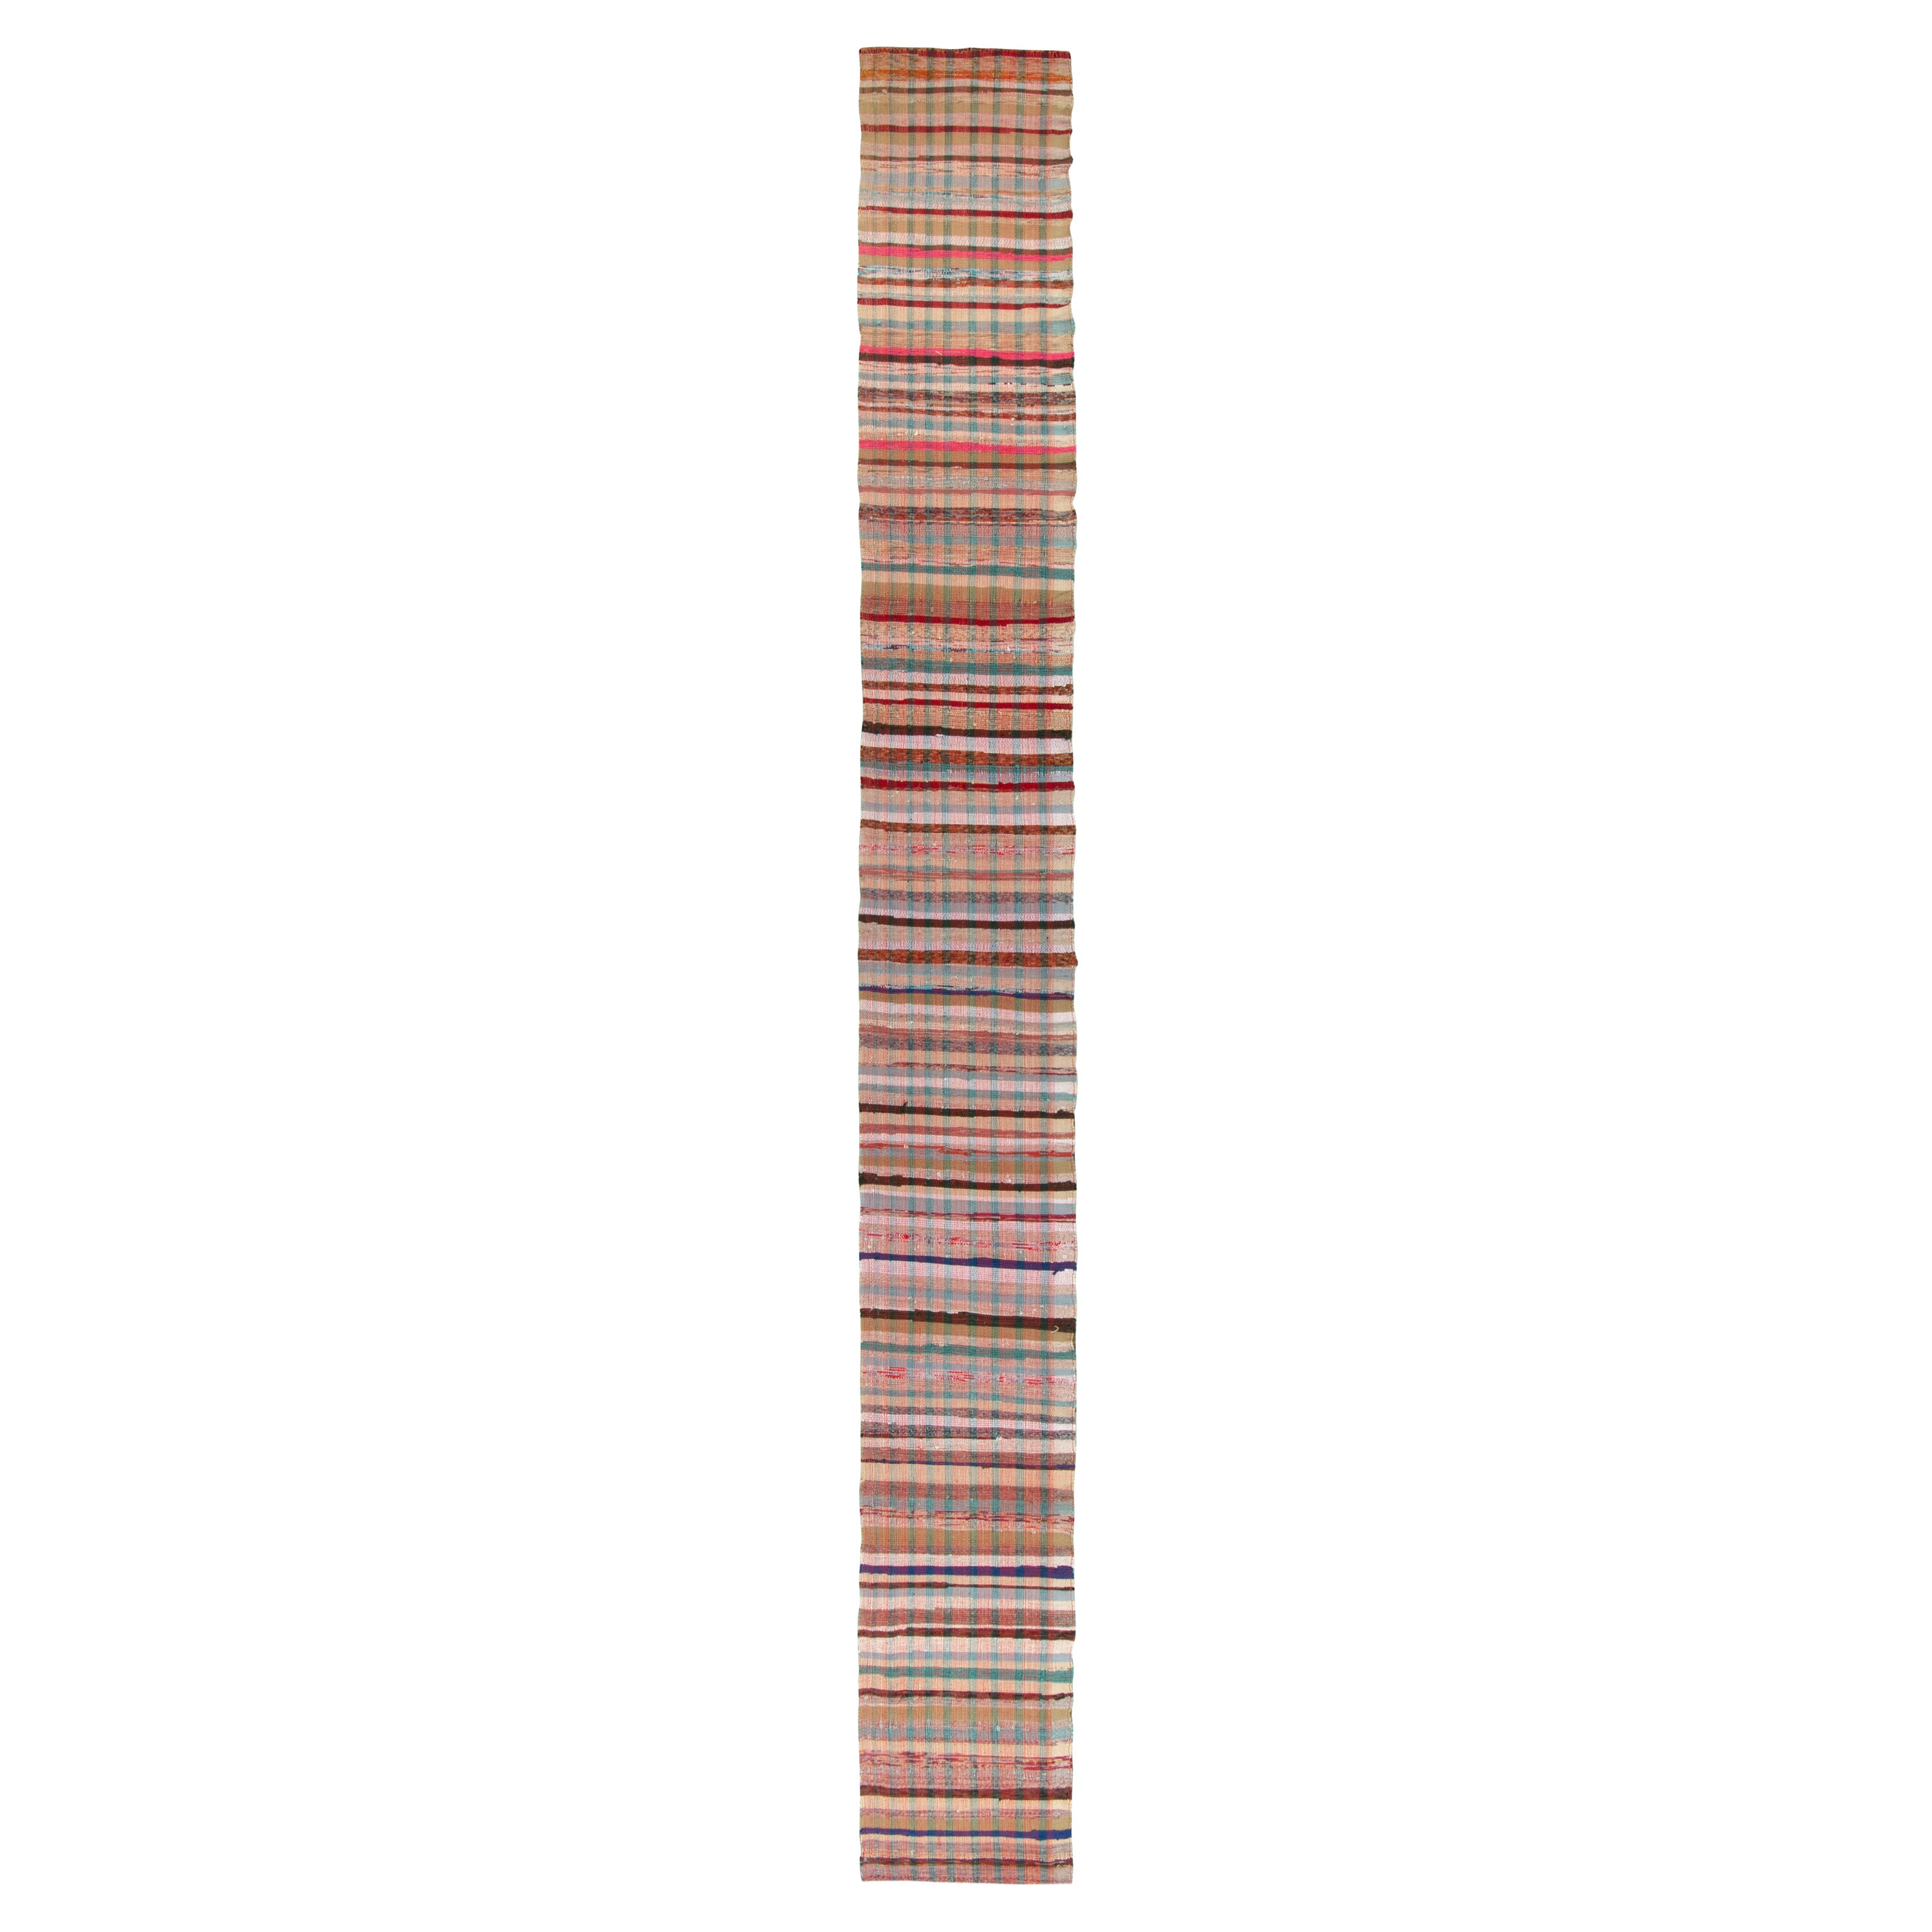 Rug & Kilim est fier de présenter ce chemin de table surdimensionné à armure plate de 2x118, le plus distingué de notre collection convoitée. 

Sur le Design/One : Le tissage texturé représente un motif écossais strié qui confère une sensation de